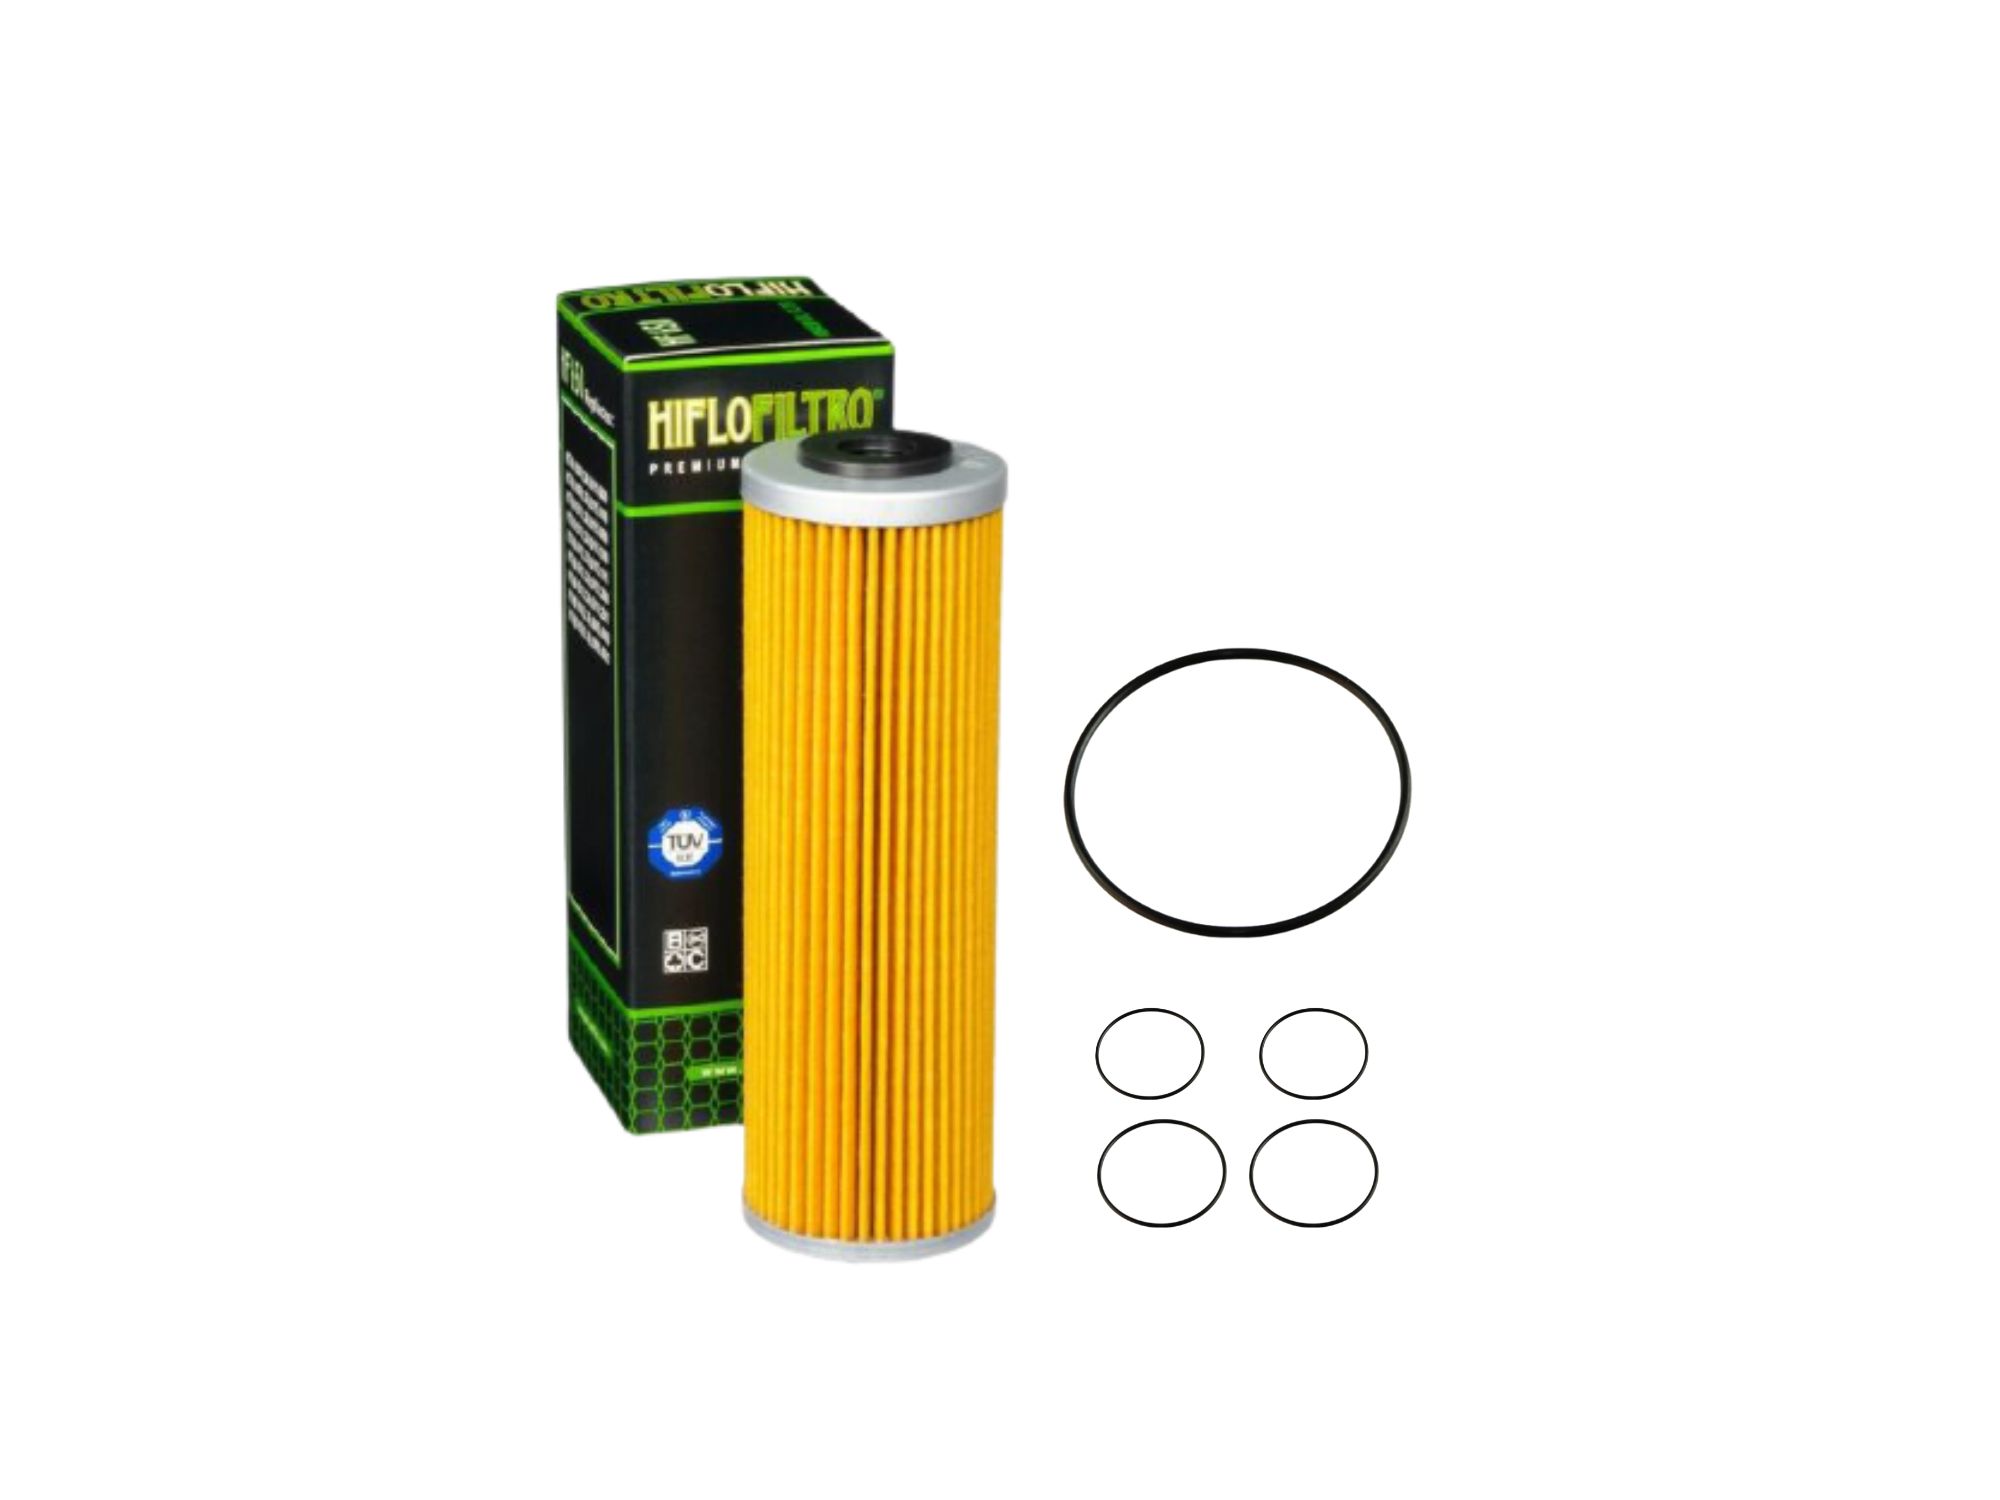 Oil filter kit suitable for KTM 790 890 Duke Adventure 18-24